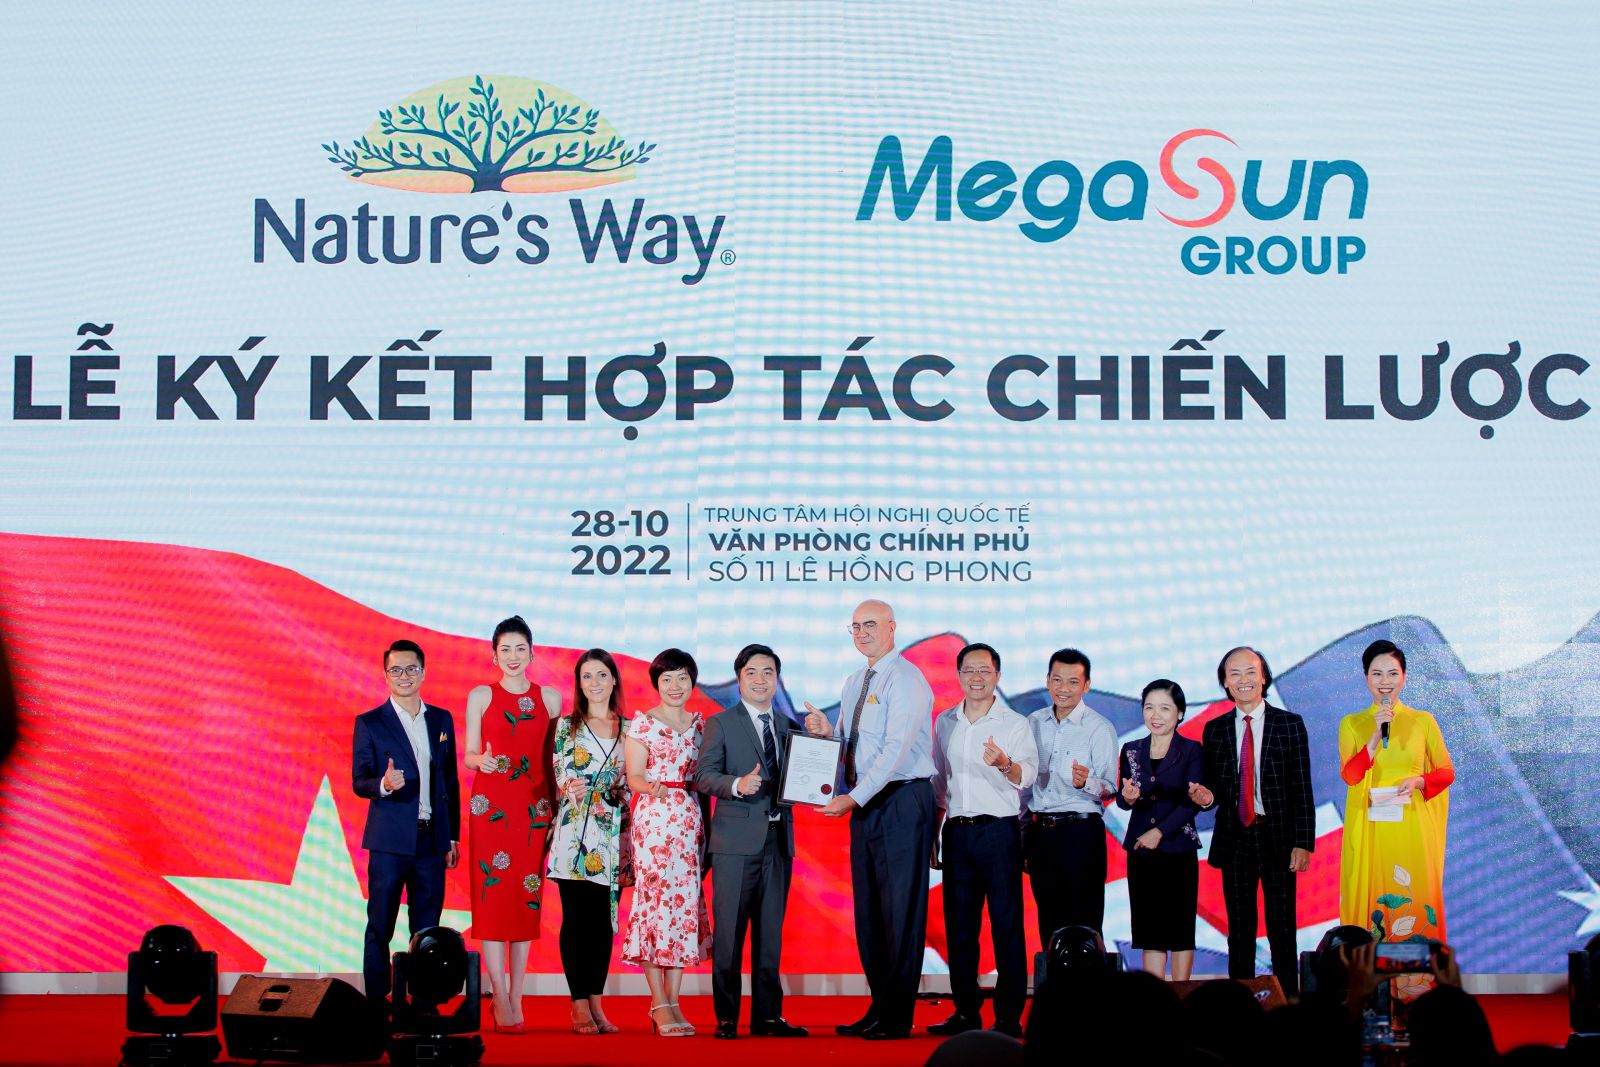  Ông Dean Curotta hứa hẹn sẽ luôn đồng hành và hỗ trợ đơn vị phân phối Nature’s Way tại thị trường Việt Nam